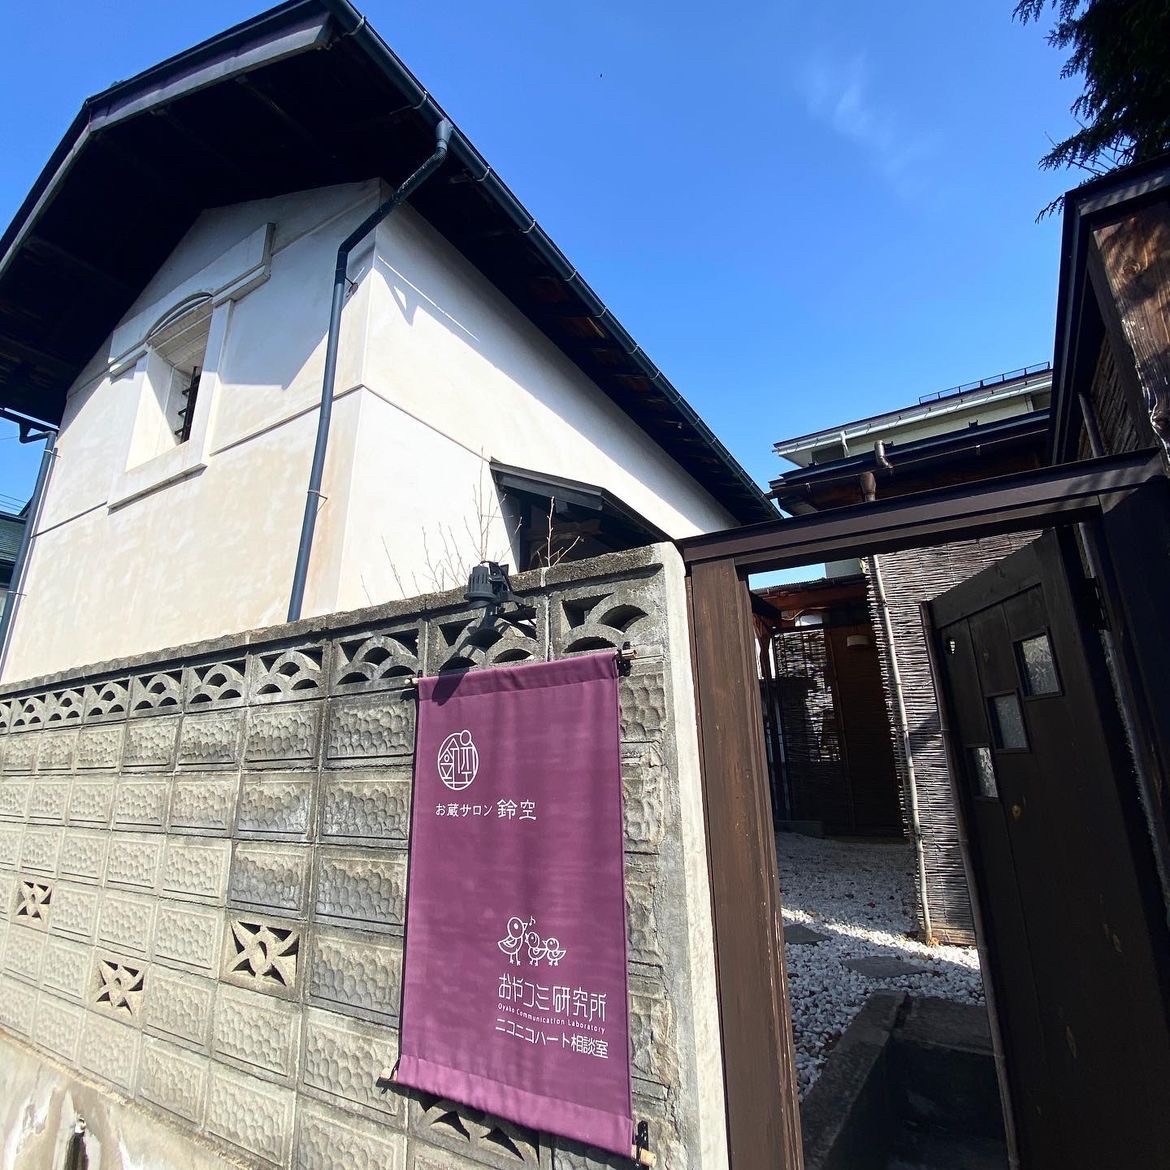 🌿体验宁静之美：お蔵サロン 鈴空的传统日式按摩之旅✨  在日本的繁忙生活中，寻找一处可以放松身心的静